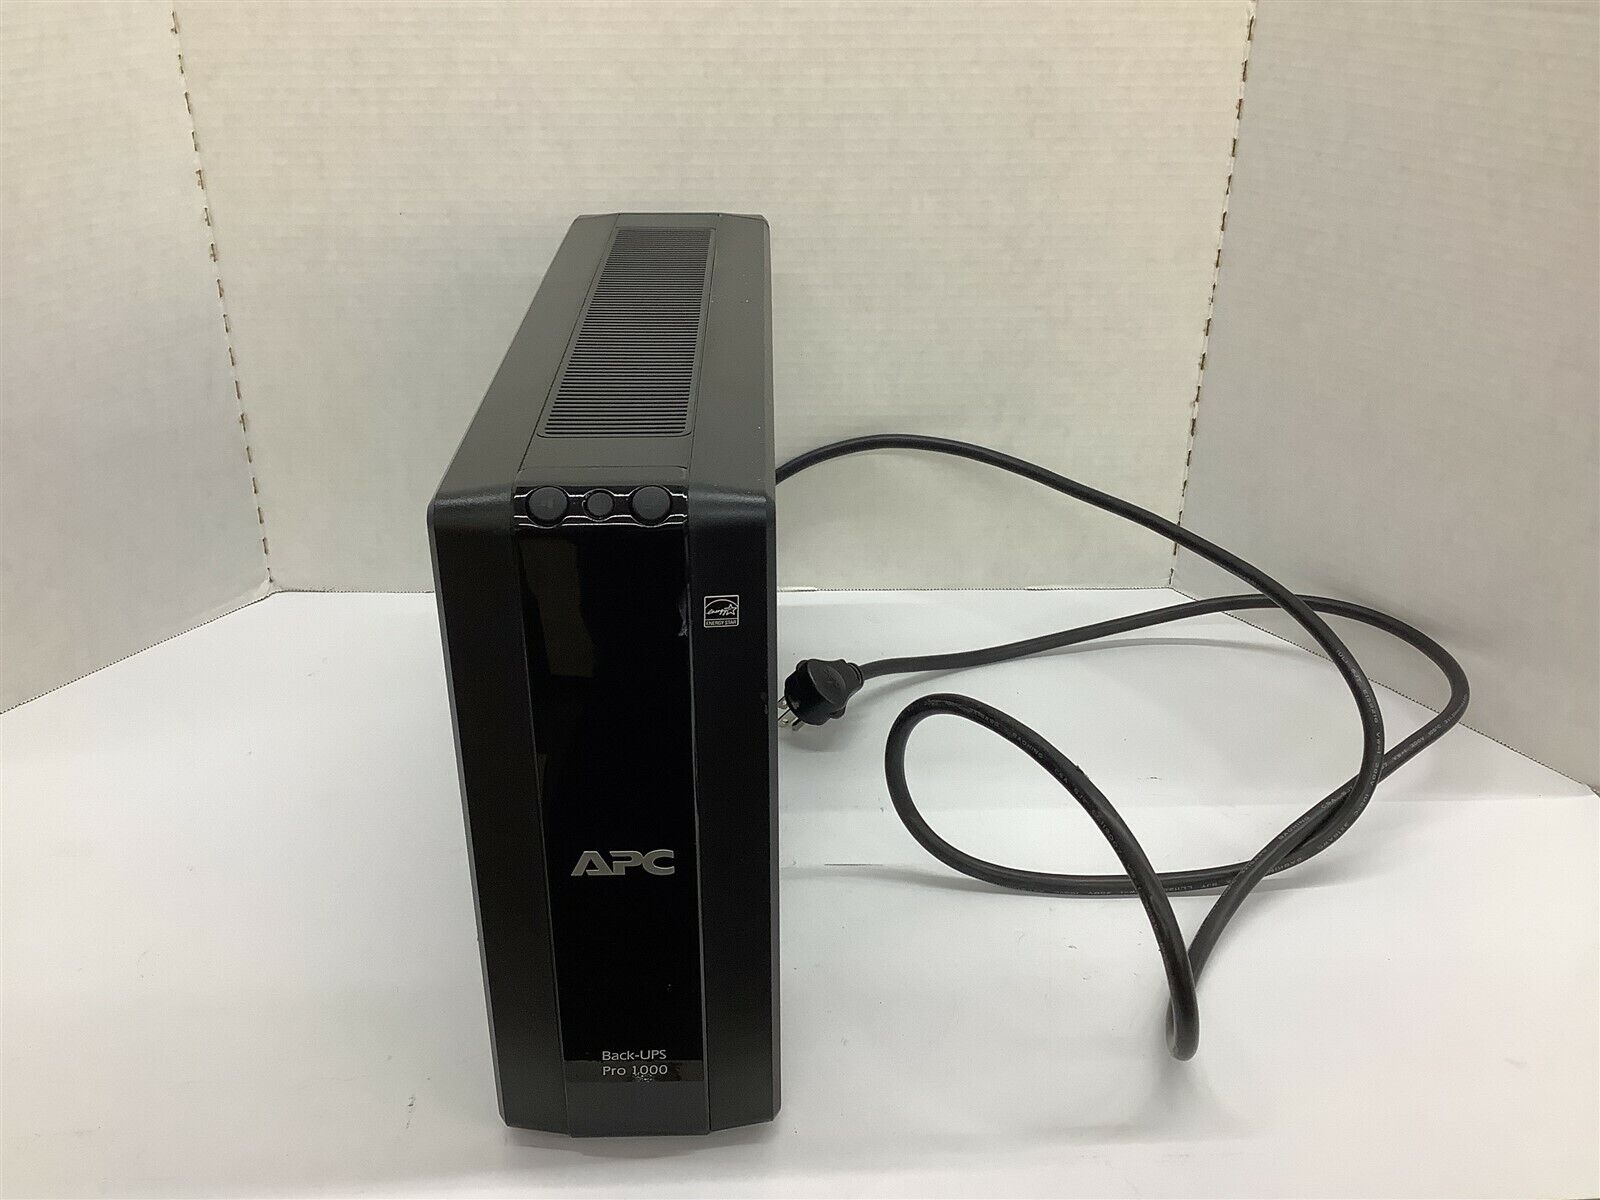 APC Back-UPS Pro 1000 Battery Back-Up System 120 V 12 A 50/60 Hz 600 W 